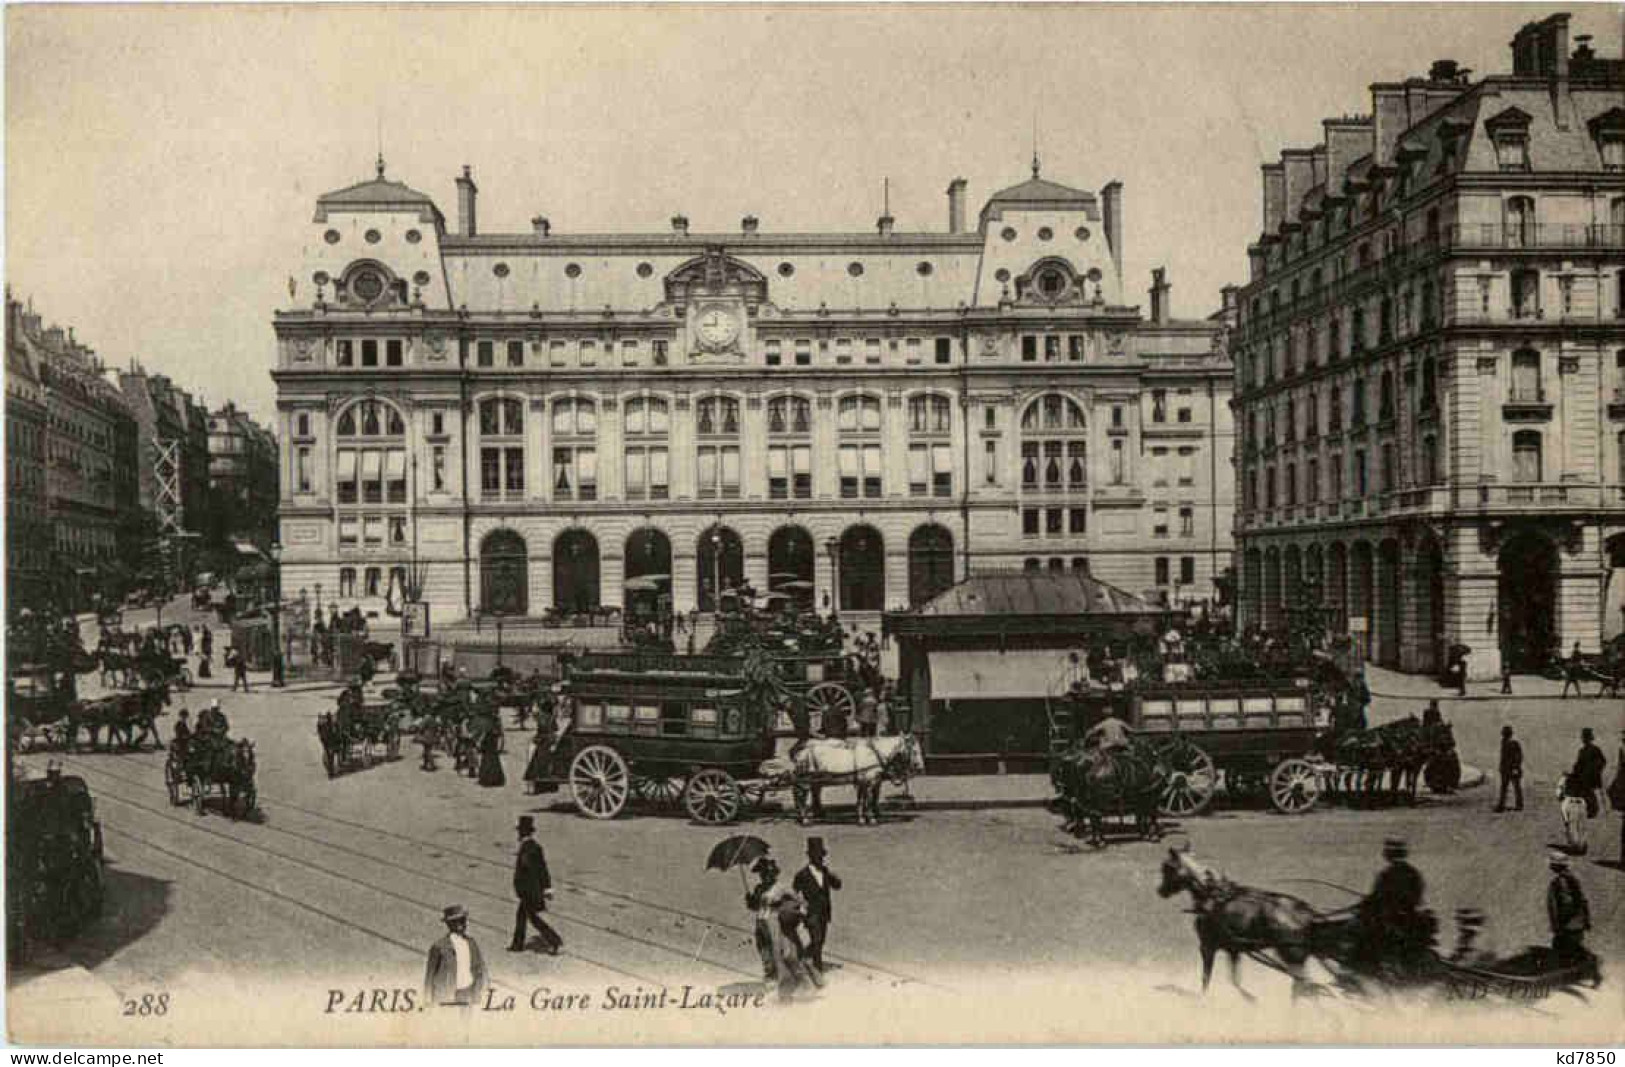 Paris - La Gare Saint Lazare - Pariser Métro, Bahnhöfe